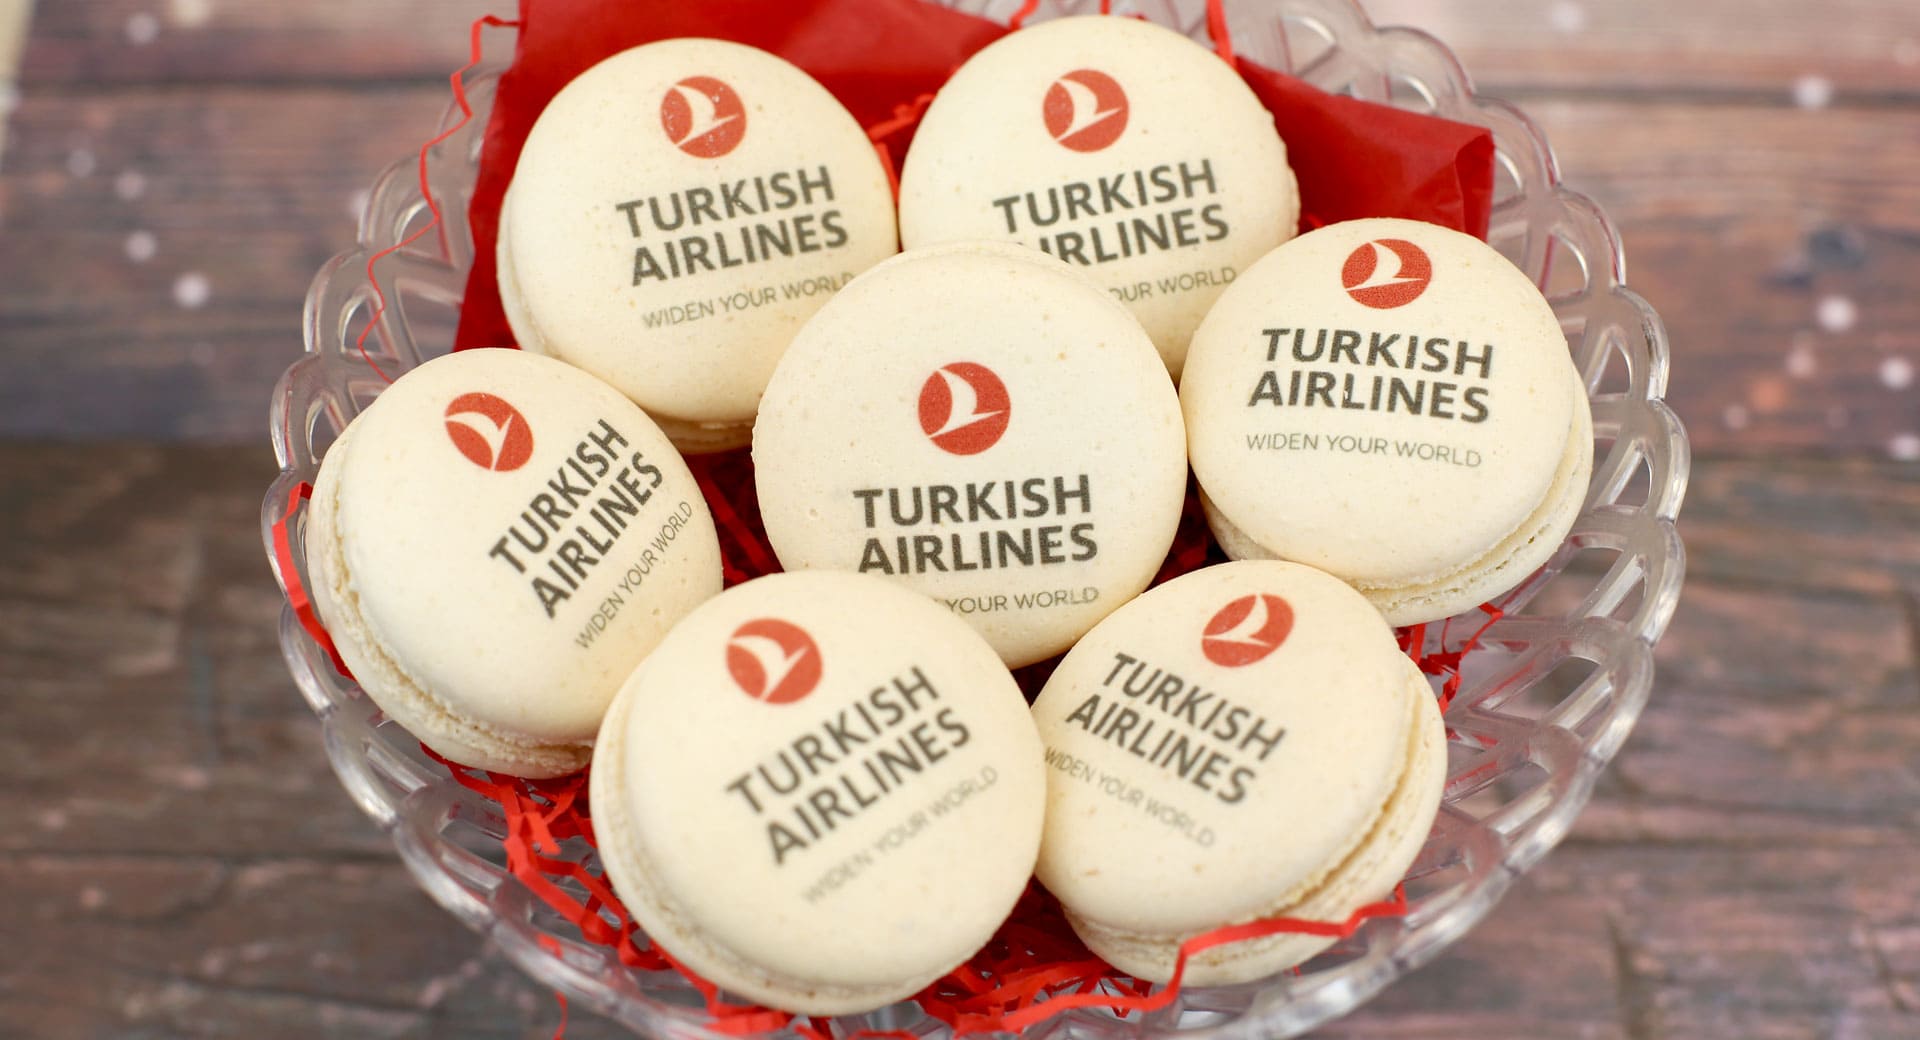 Корпоративный подарок от Turkish Airlines - брендирование макарунов